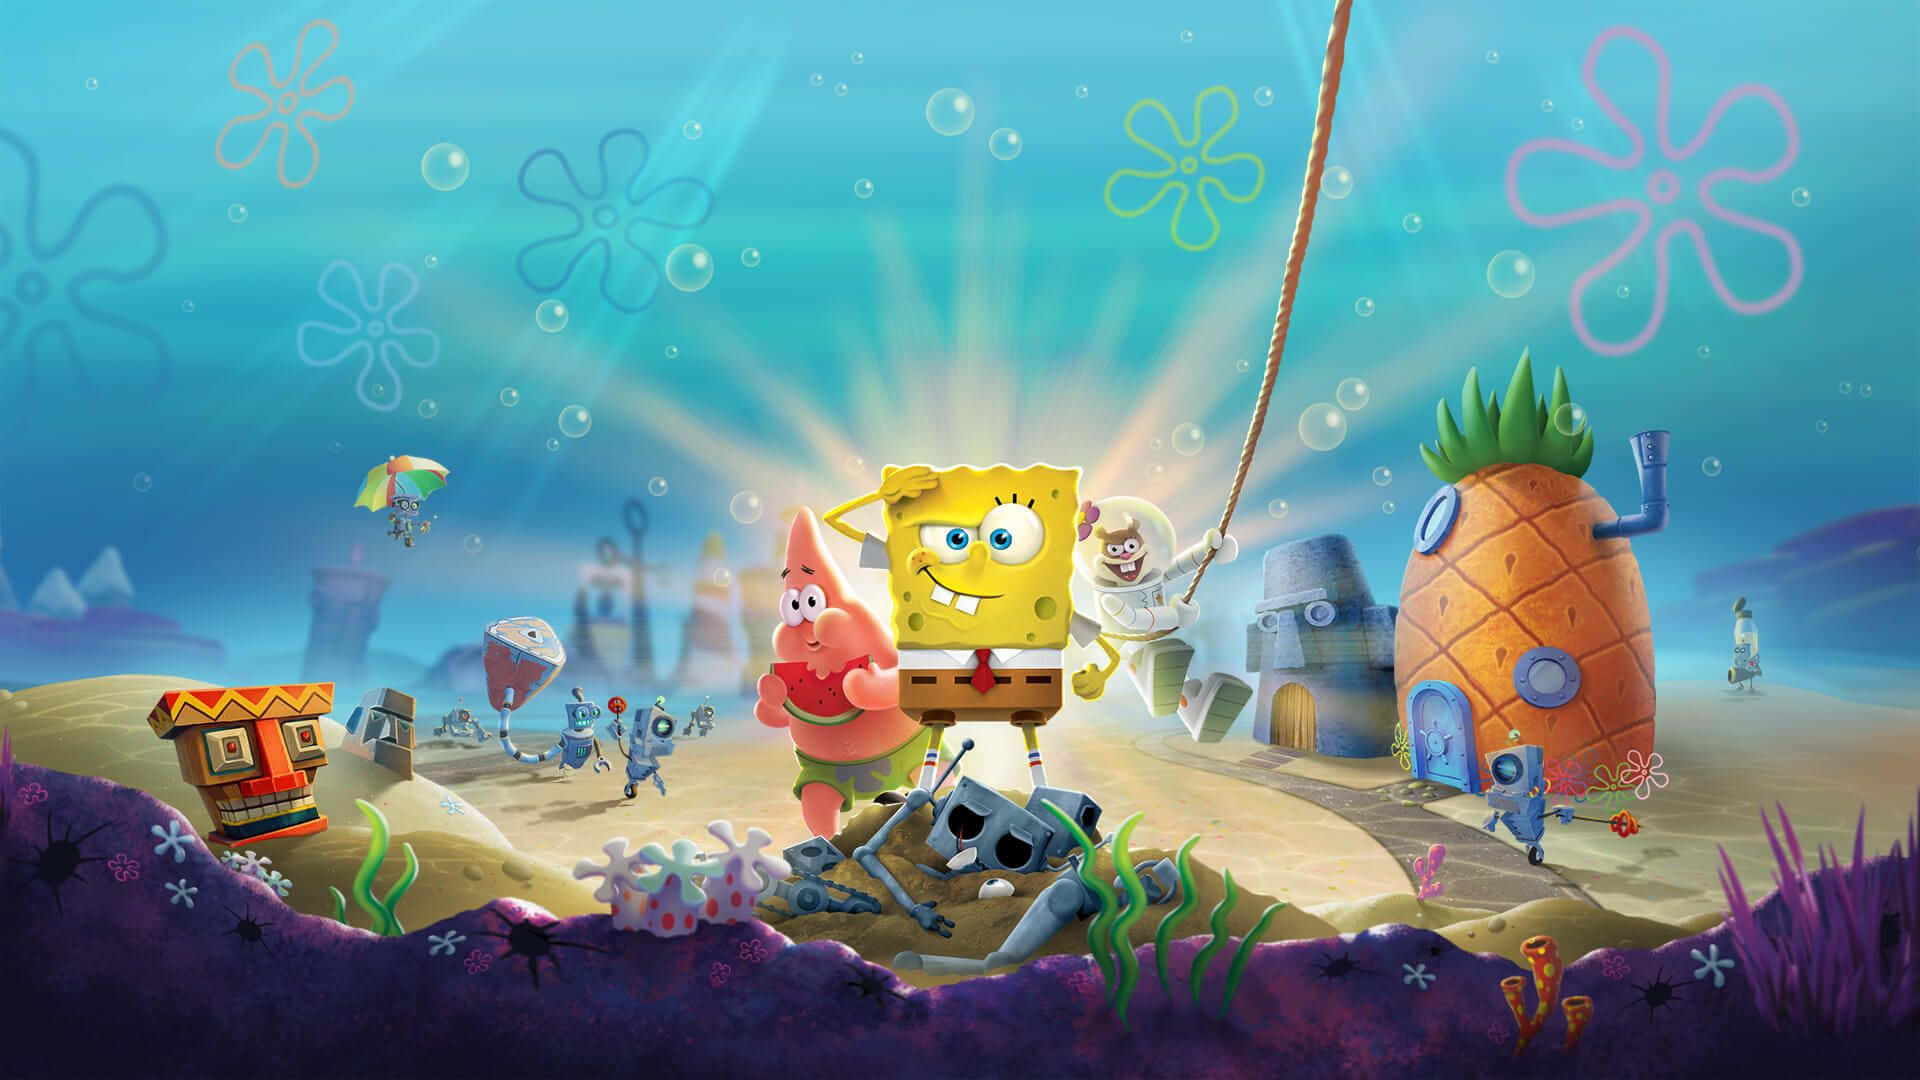 Brighten Up Your Desktop With This Classic Image Of Spongebob!